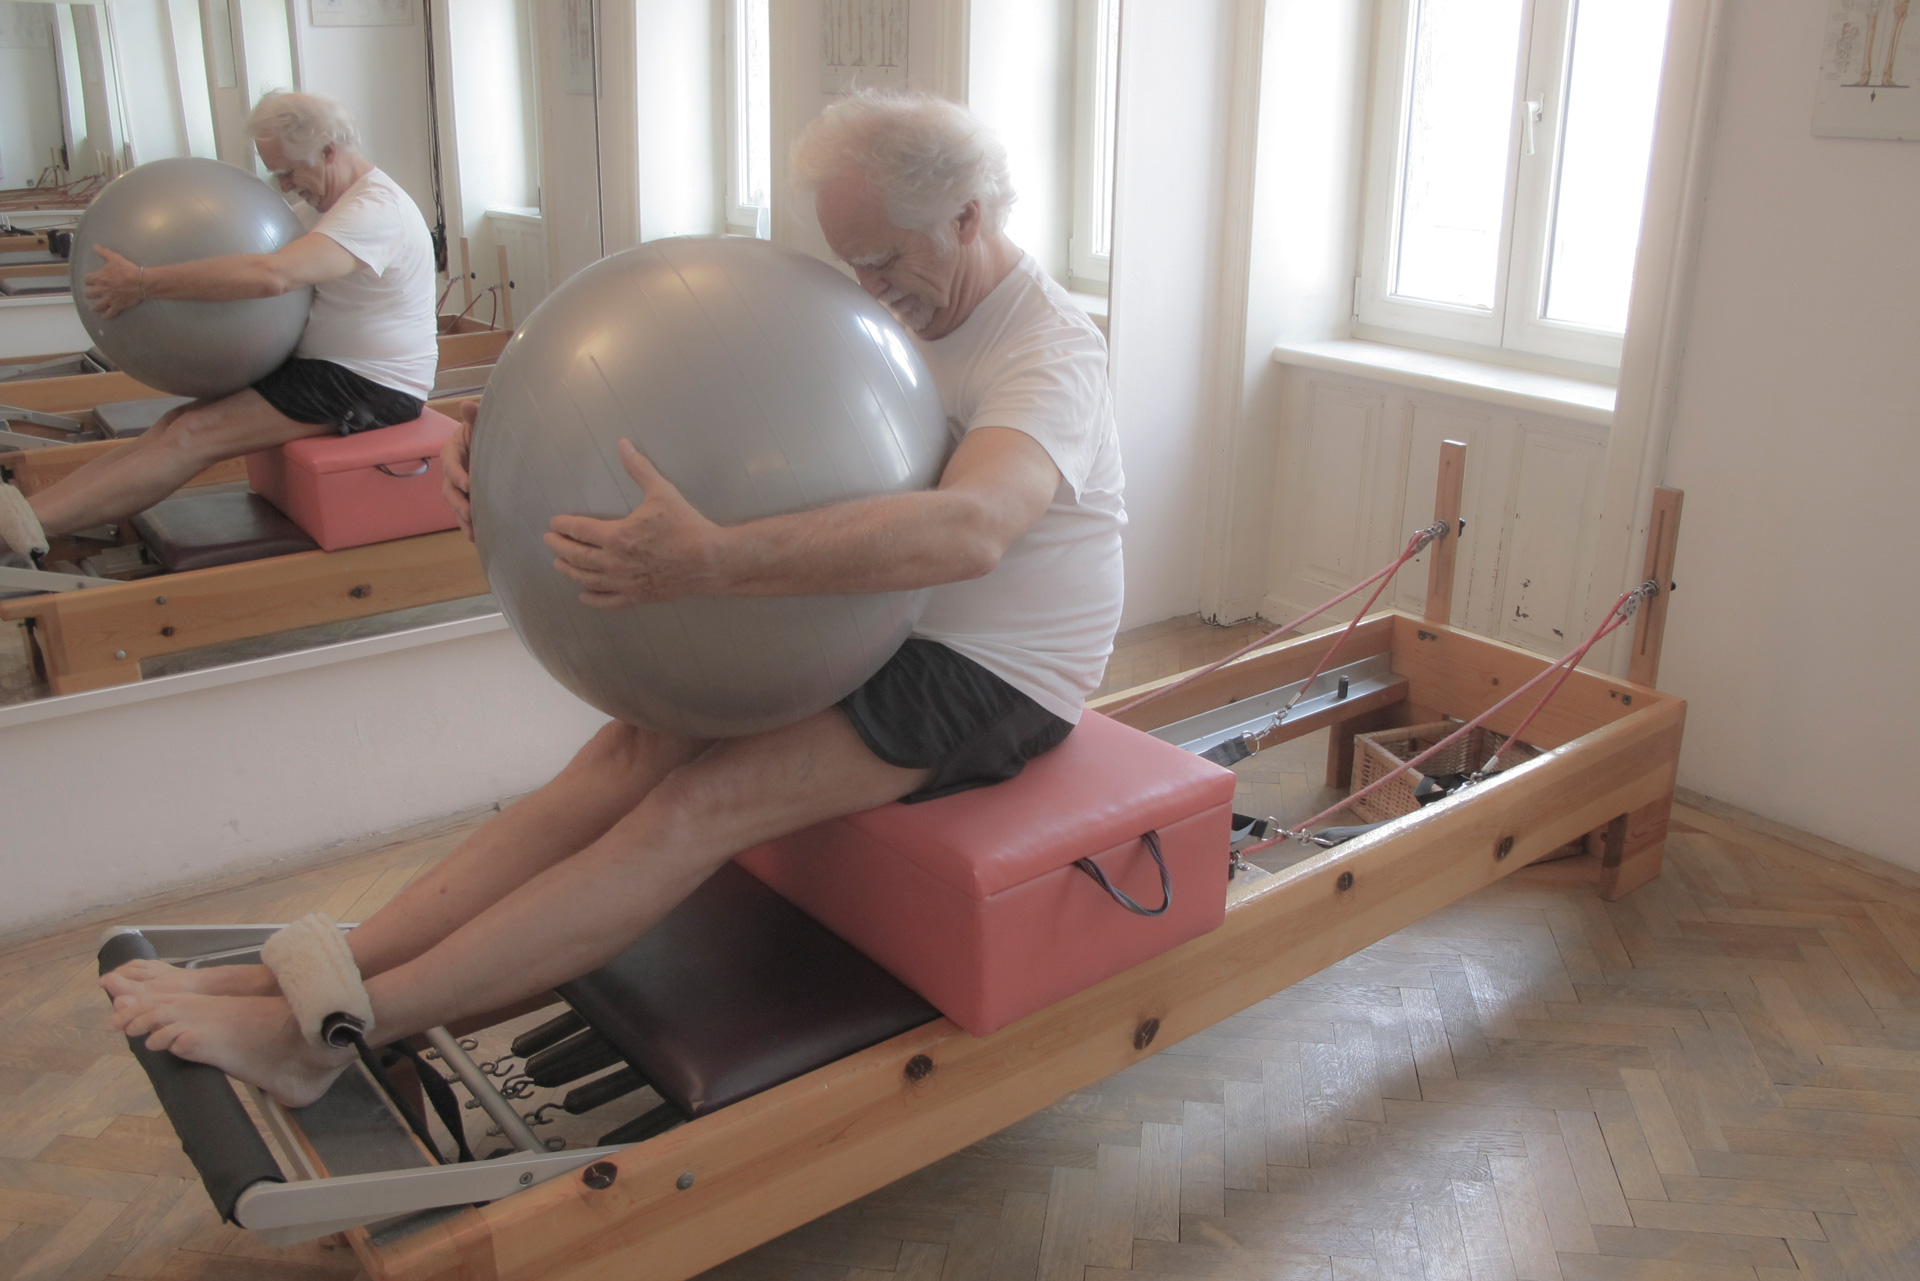 Short Box Serie Pilates Geräte Reformer Übung Kinästhetische Wahrnehumng Trainingsoptimierung Körper-Bewusstheit